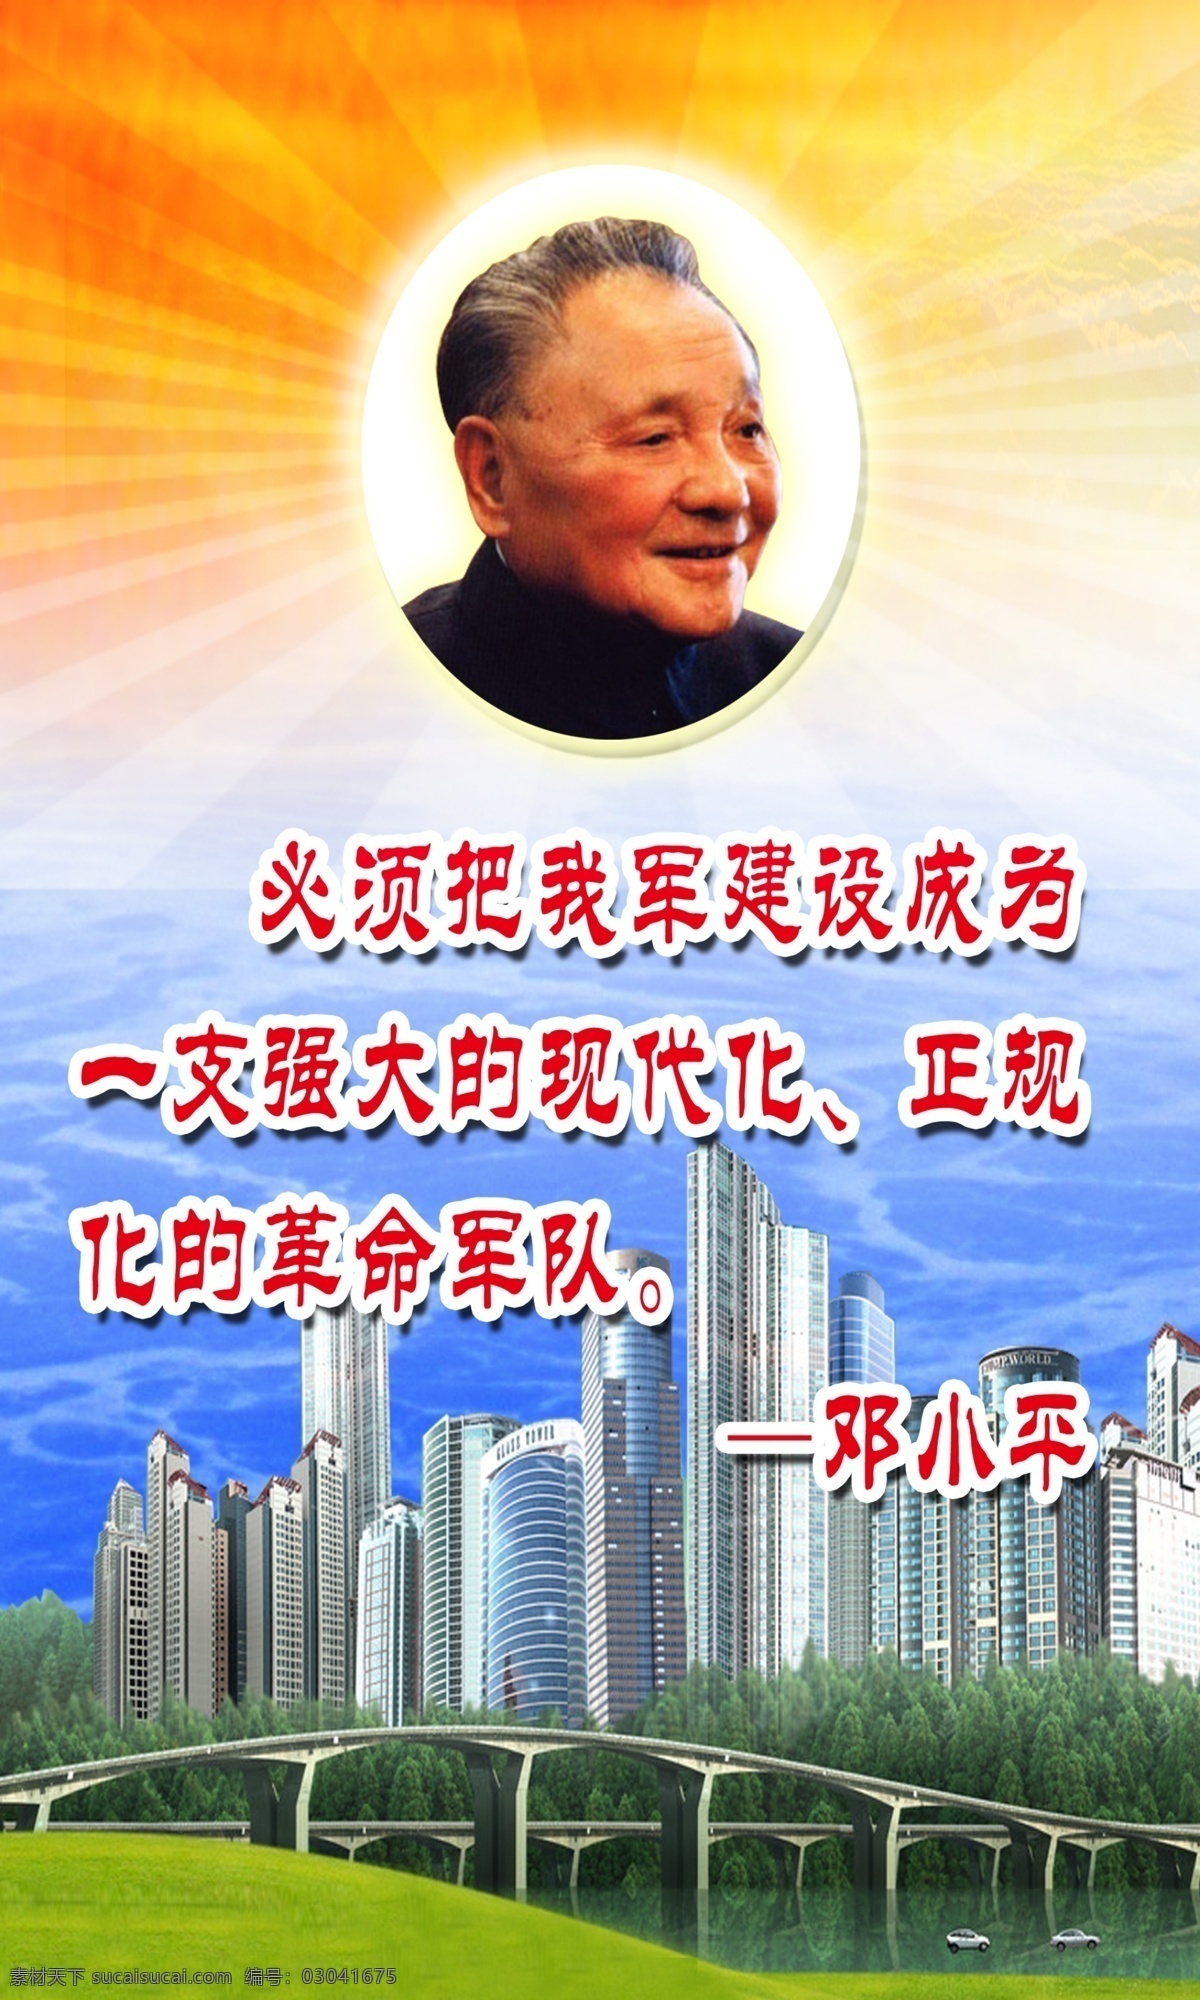 邓小平 改革开放 伟大 旗帜 建筑 楼房 海面 光线 广告设计模板 源文件